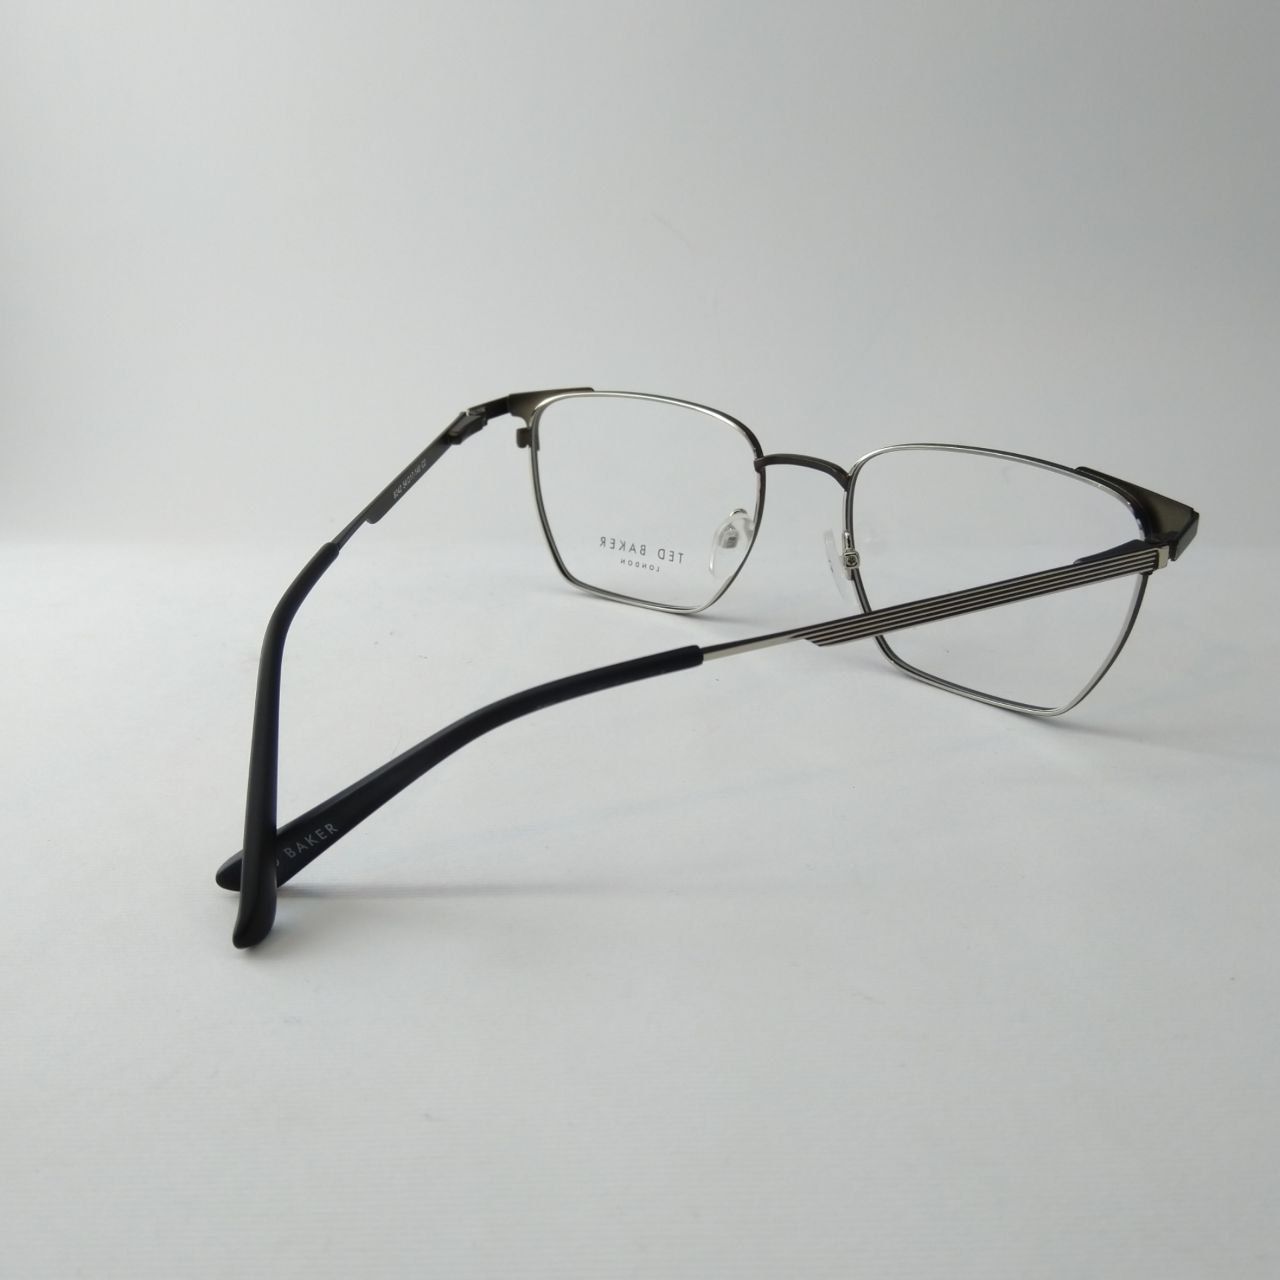 فریم عینک طبی مردانه تد بیکر مدل 8242 -  - 3